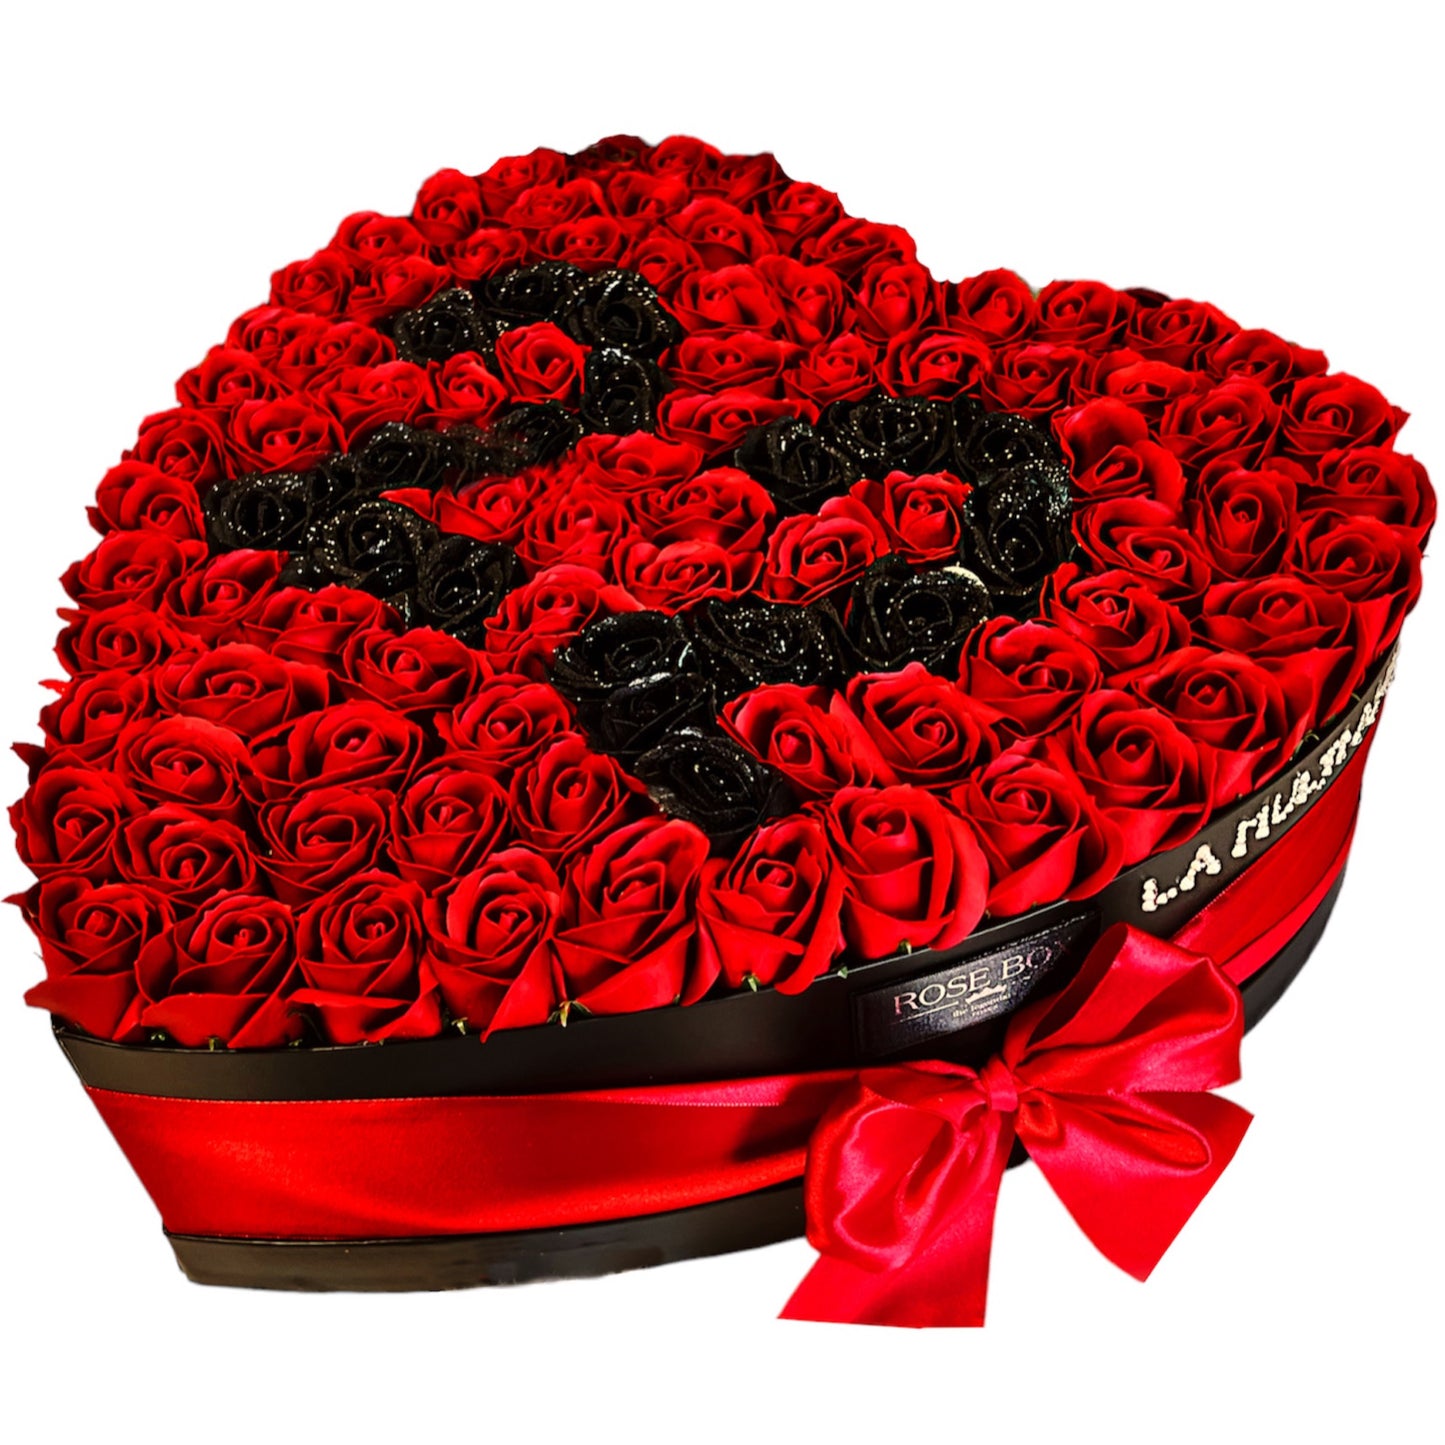 Cutie inimă imensă cu trandafiri roșu&negru cu sclipici personalizată